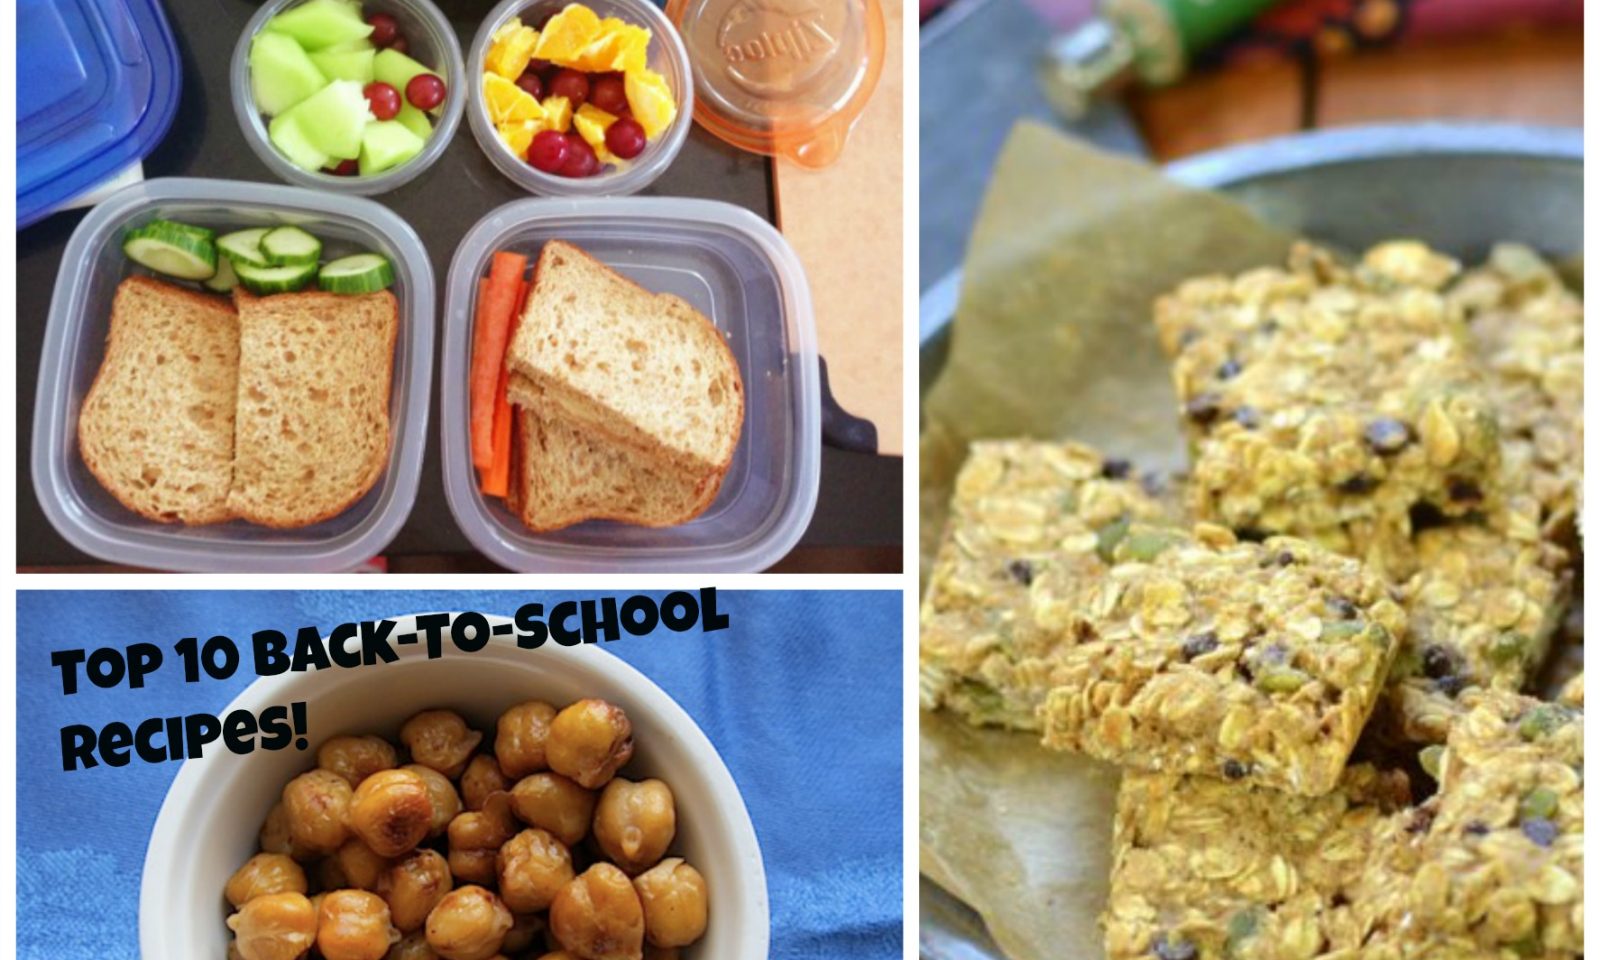 英語脳メルマガ 第026号 英語脳 How To Handle Junk Food In Schools And How To Help Kids Feel Ok About Their Plant Based Lunches の意味は 英語脳ネット